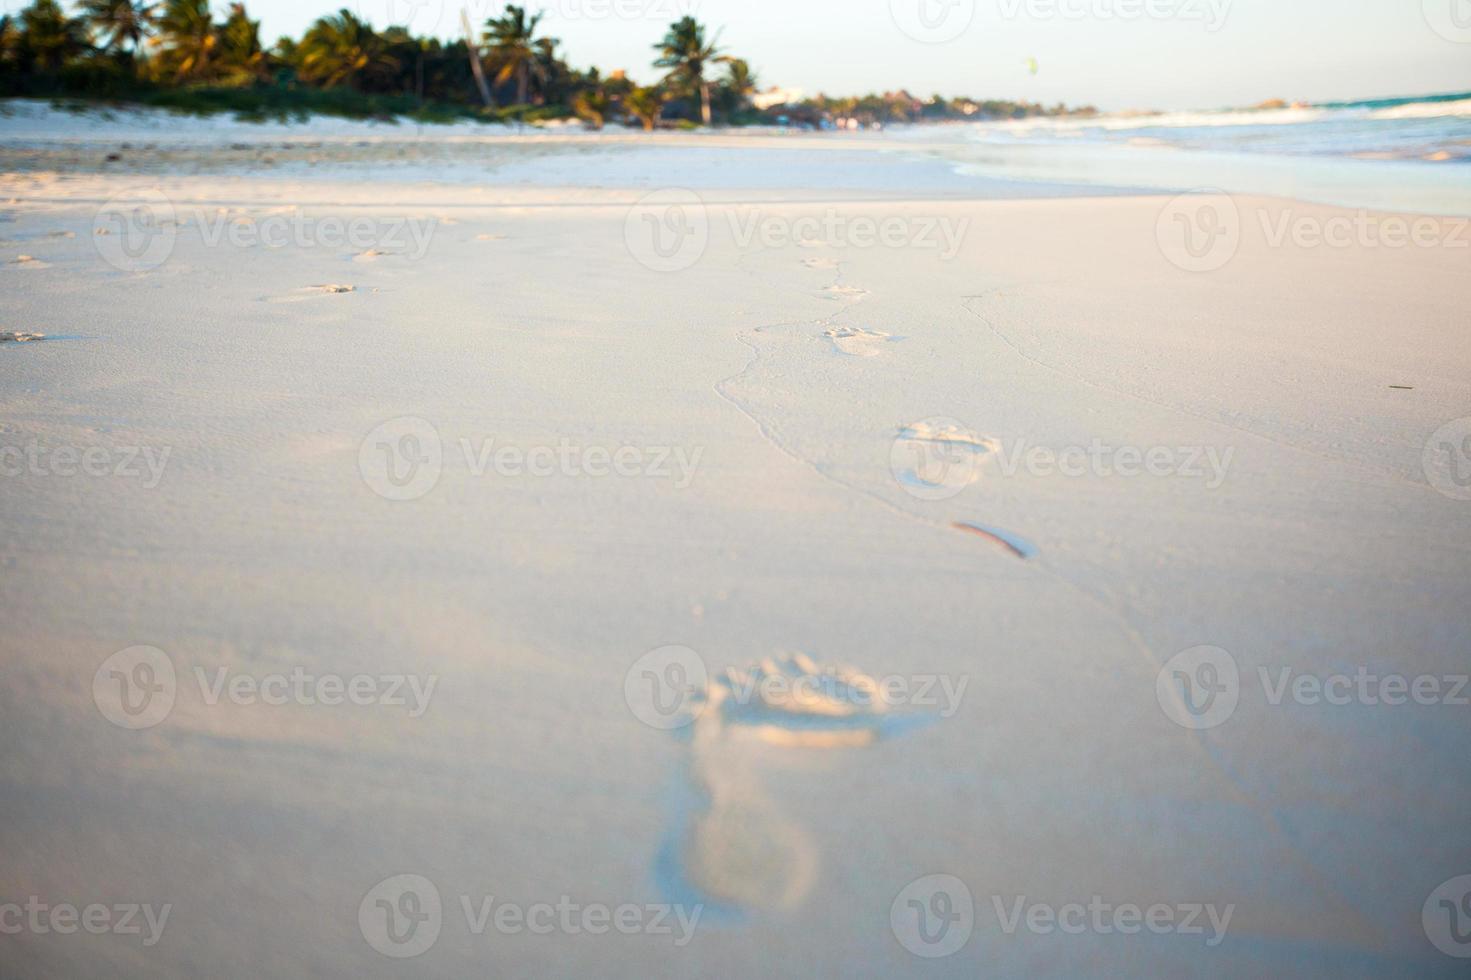 huellas humanas en la playa de arena blanca foto